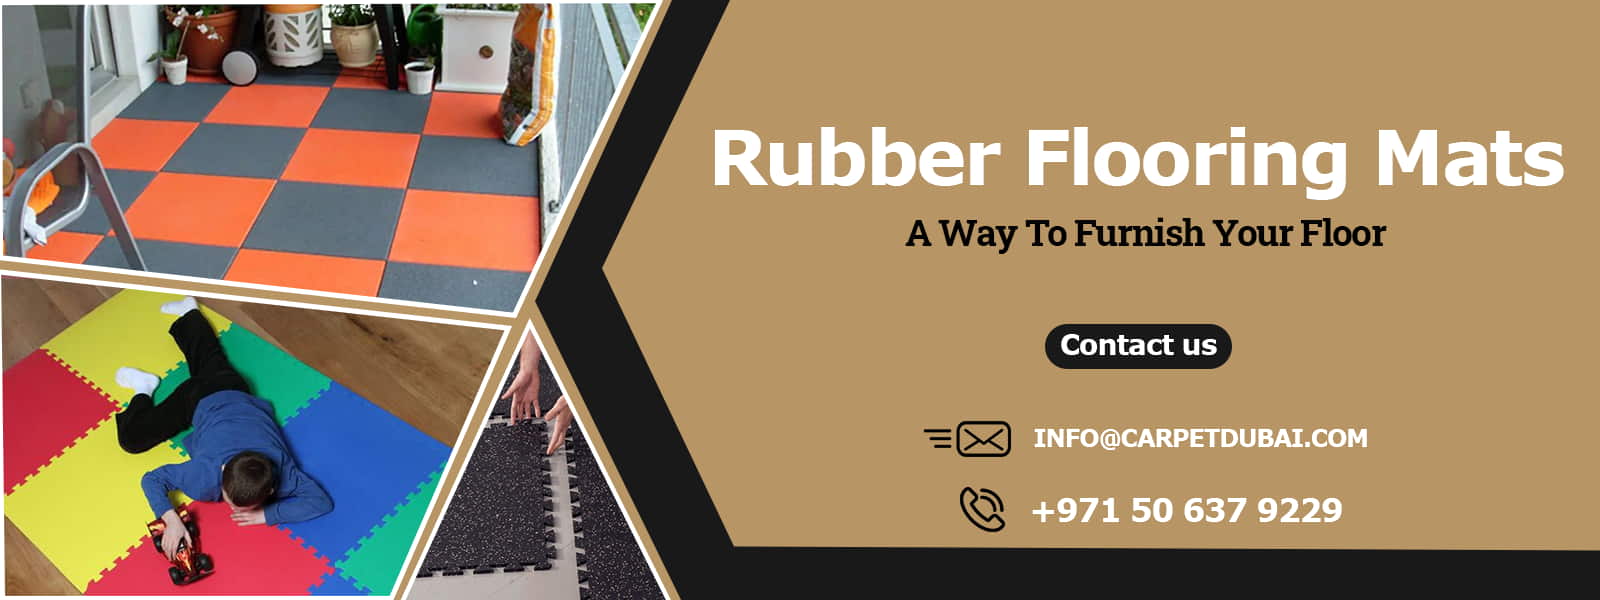 Rubber-Flooring-Mats banner